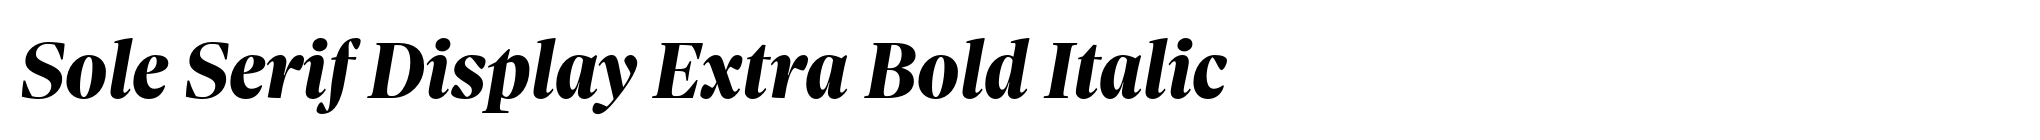 Sole Serif Display Extra Bold Italic image